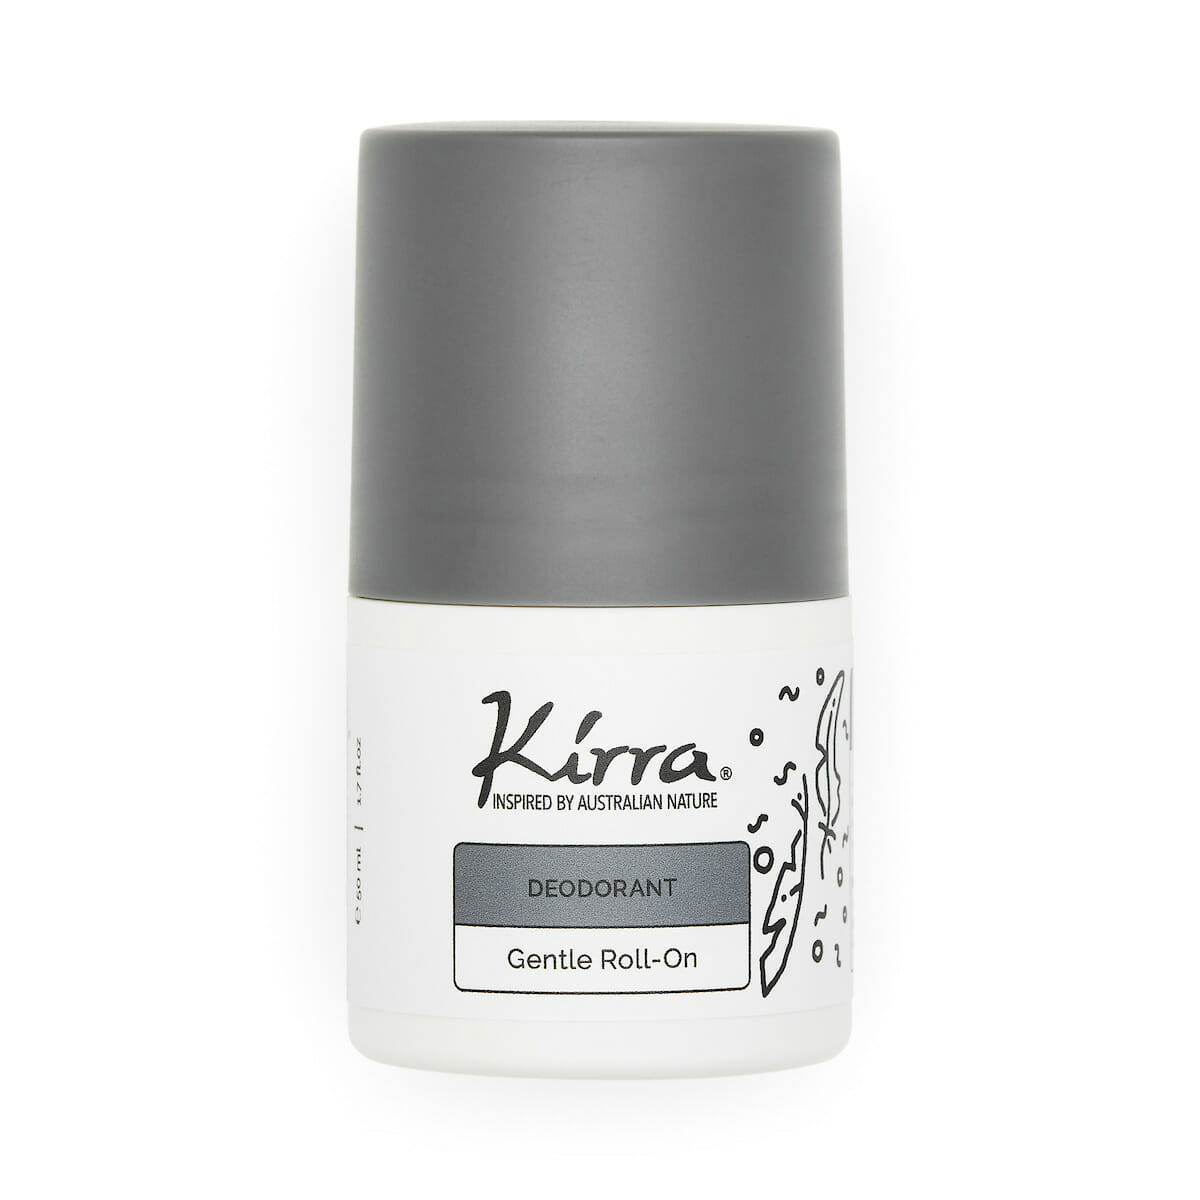 Kirra 24h Bicarb Free Gentle Roll-On Deodorant